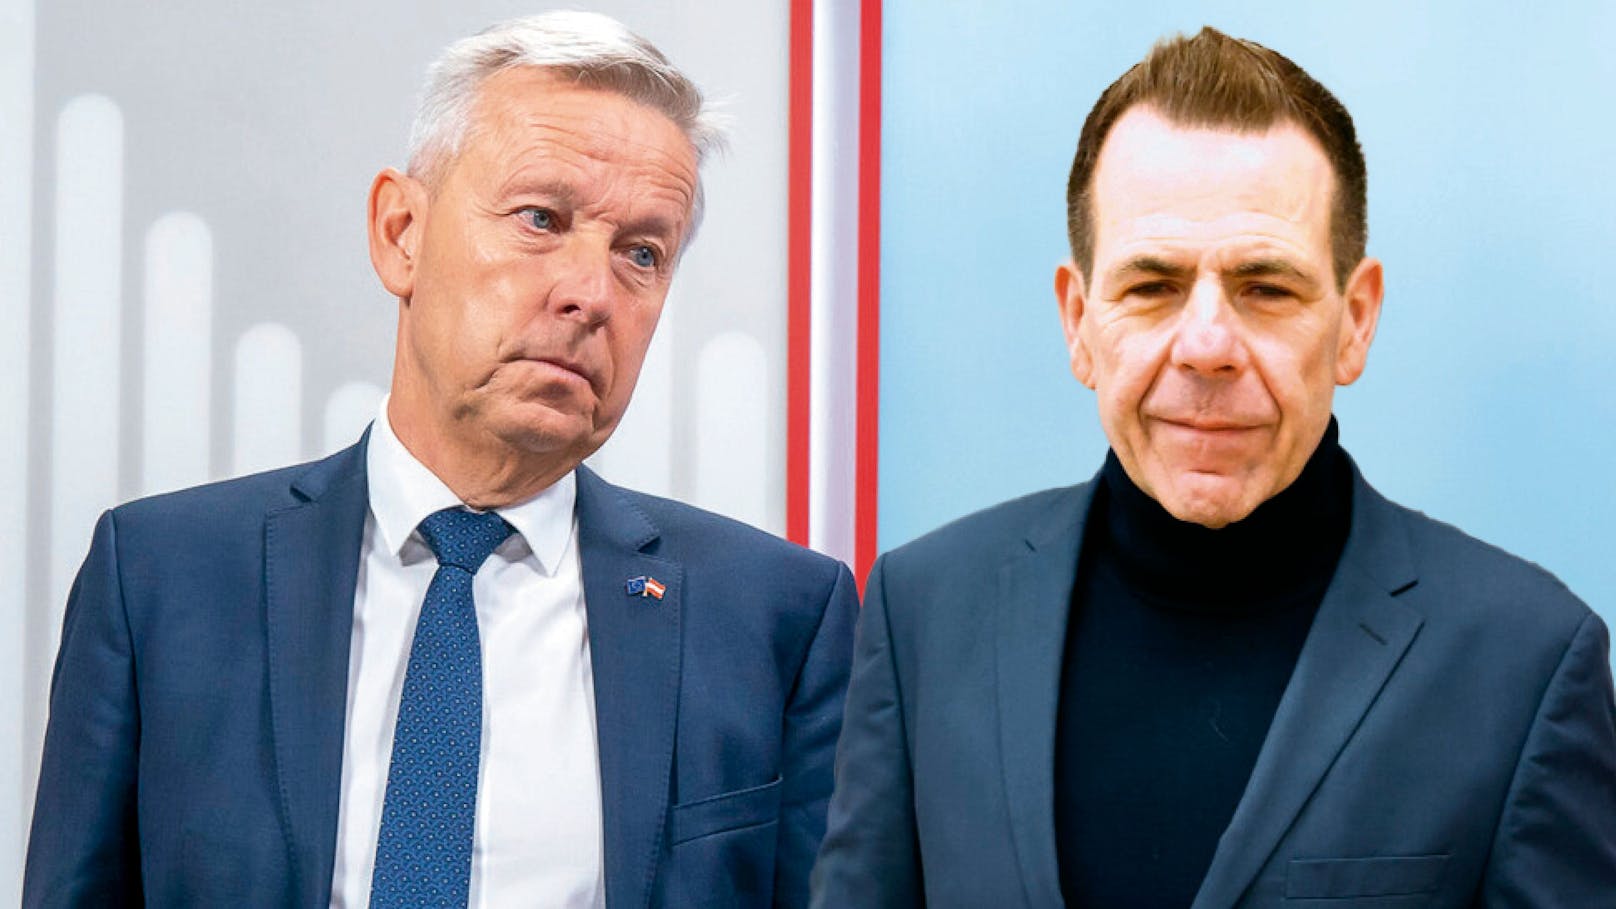 Vilimsky kontert ÖVP – "Kein Blankoscheck für EU"